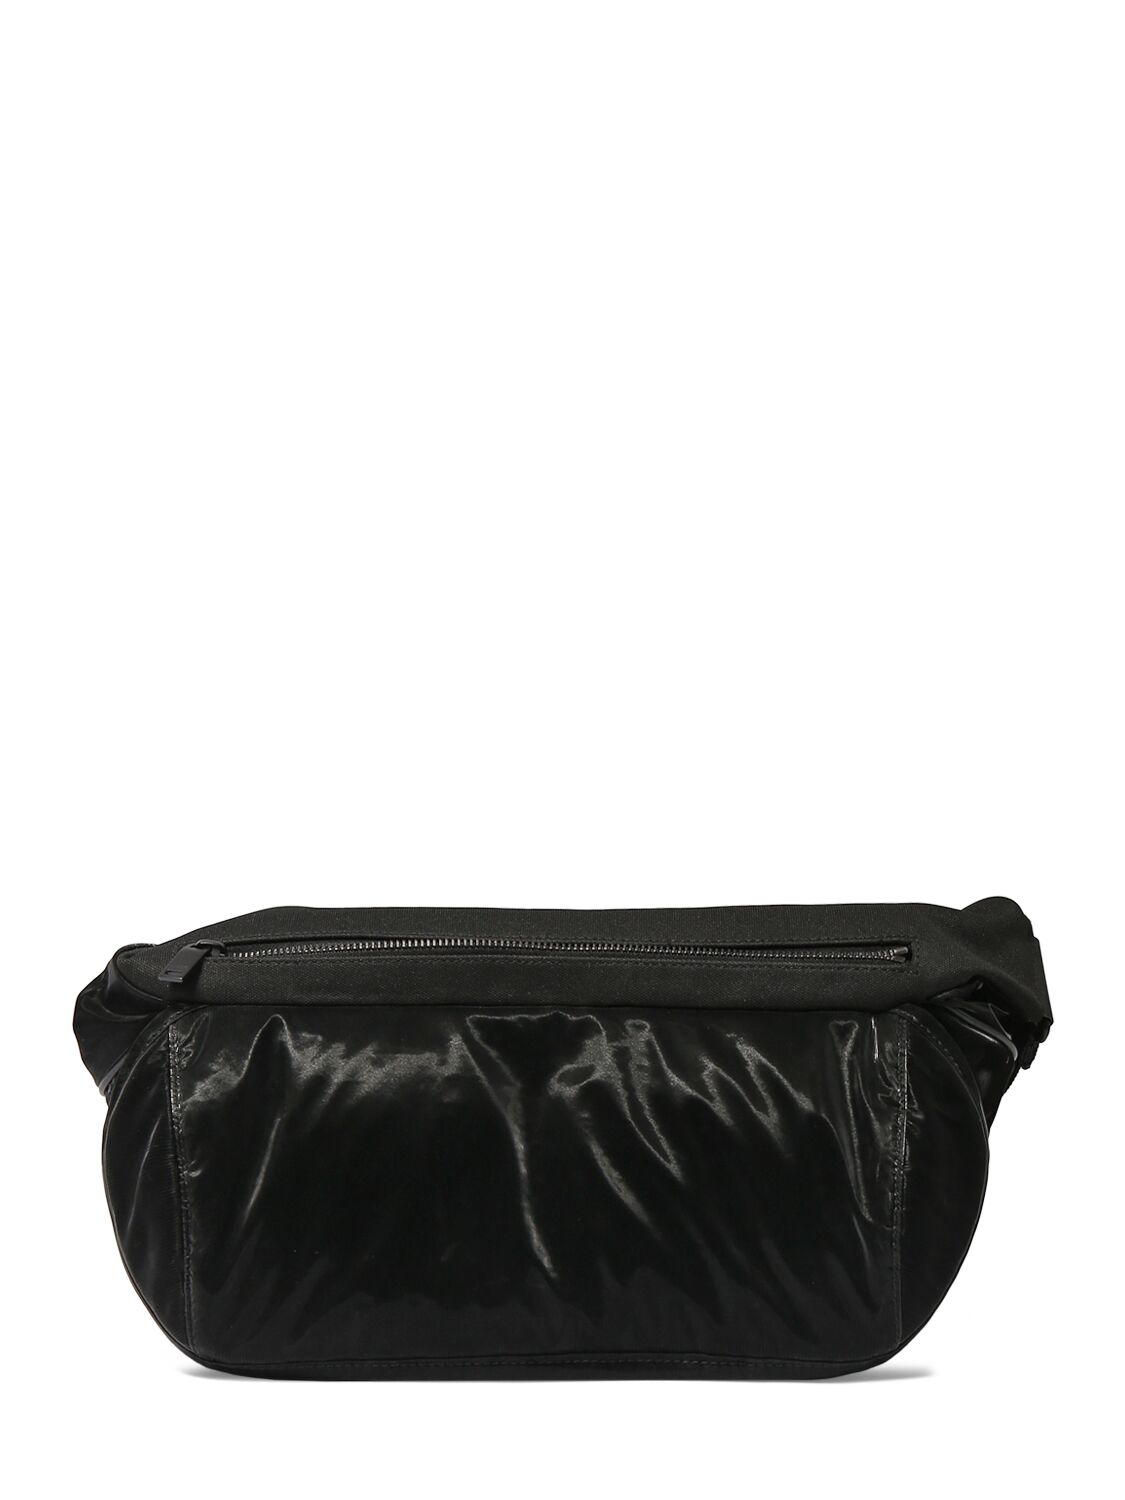 Saint Laurent Tech Bodybag In Black